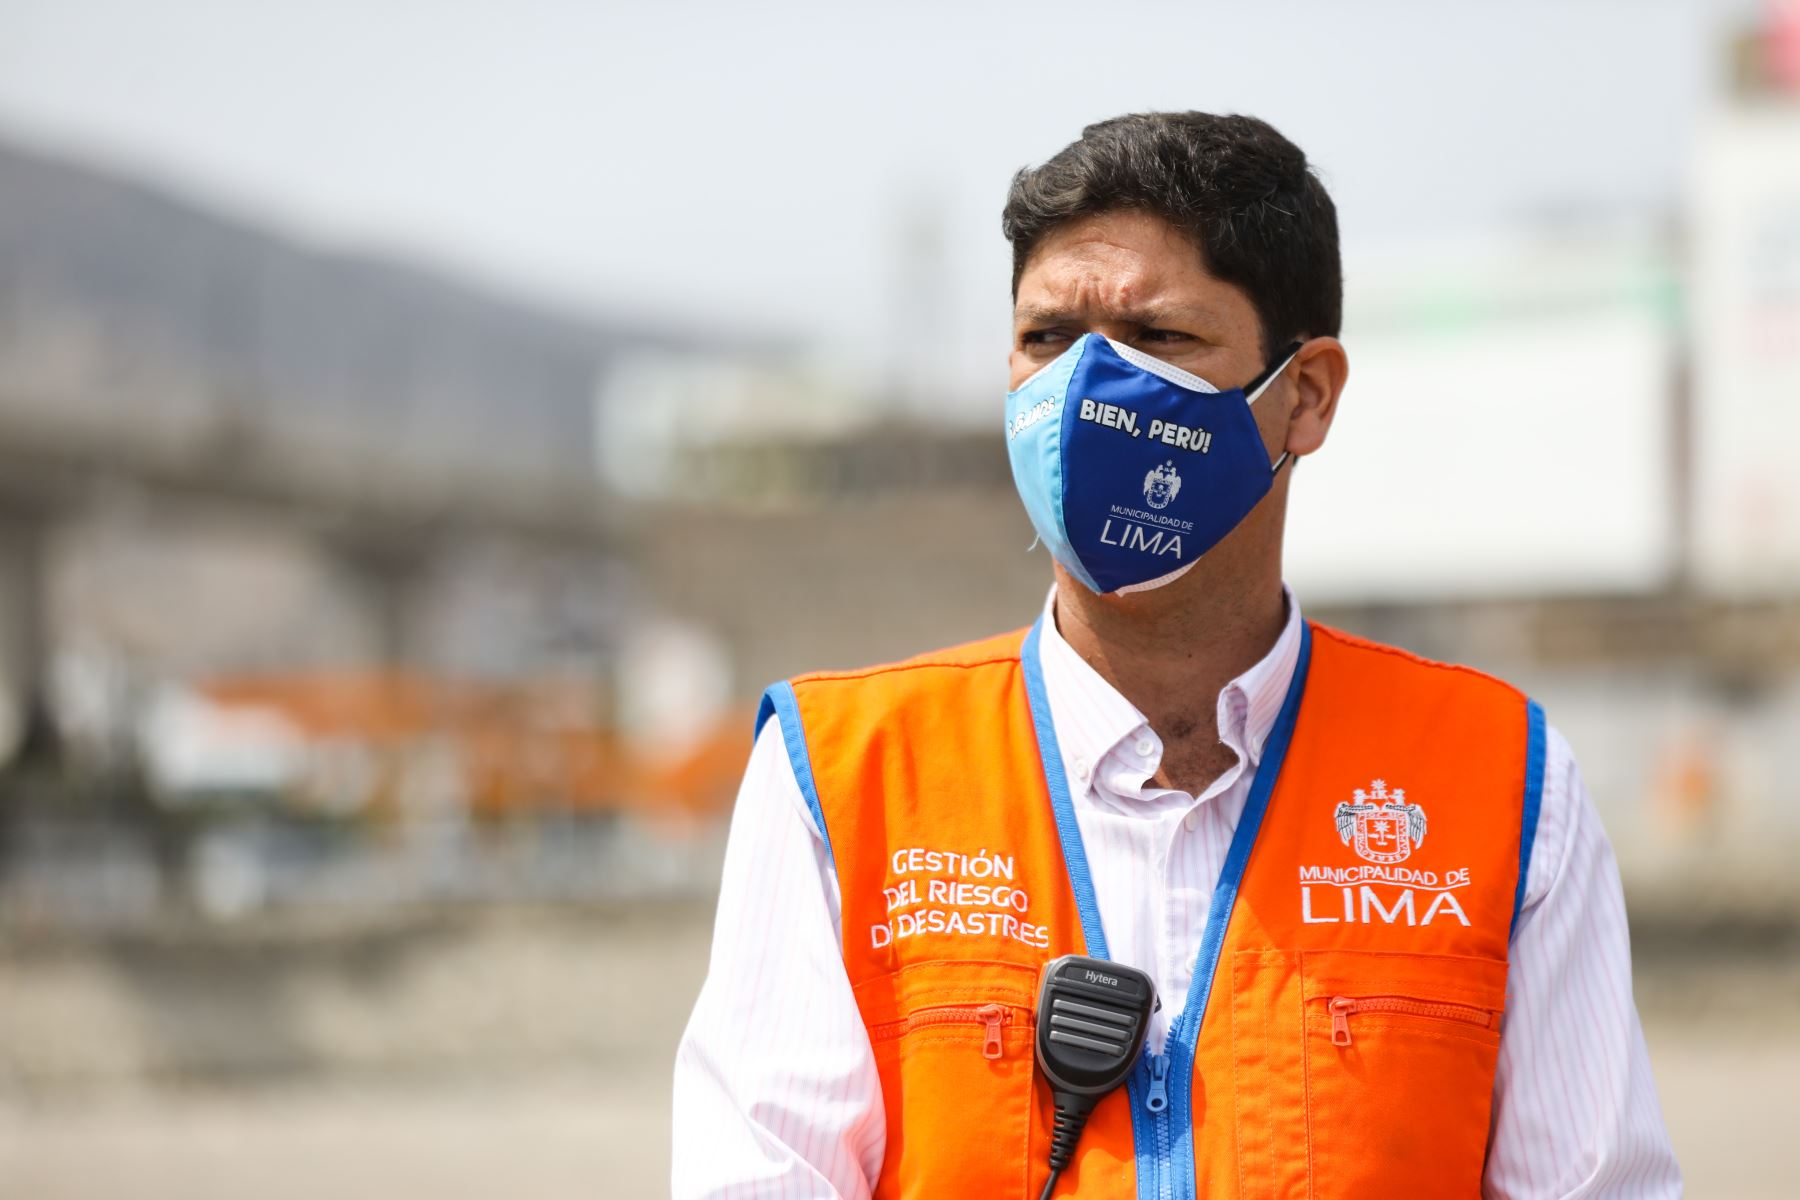 La Municipalidad Metropolitana de Lima, realizó el llenado de sacos terreros en el AH Nueva Caja de Agua en Cercado de Lima como medida de prevención ante un posible desborde del río Rímac. Foto: MML